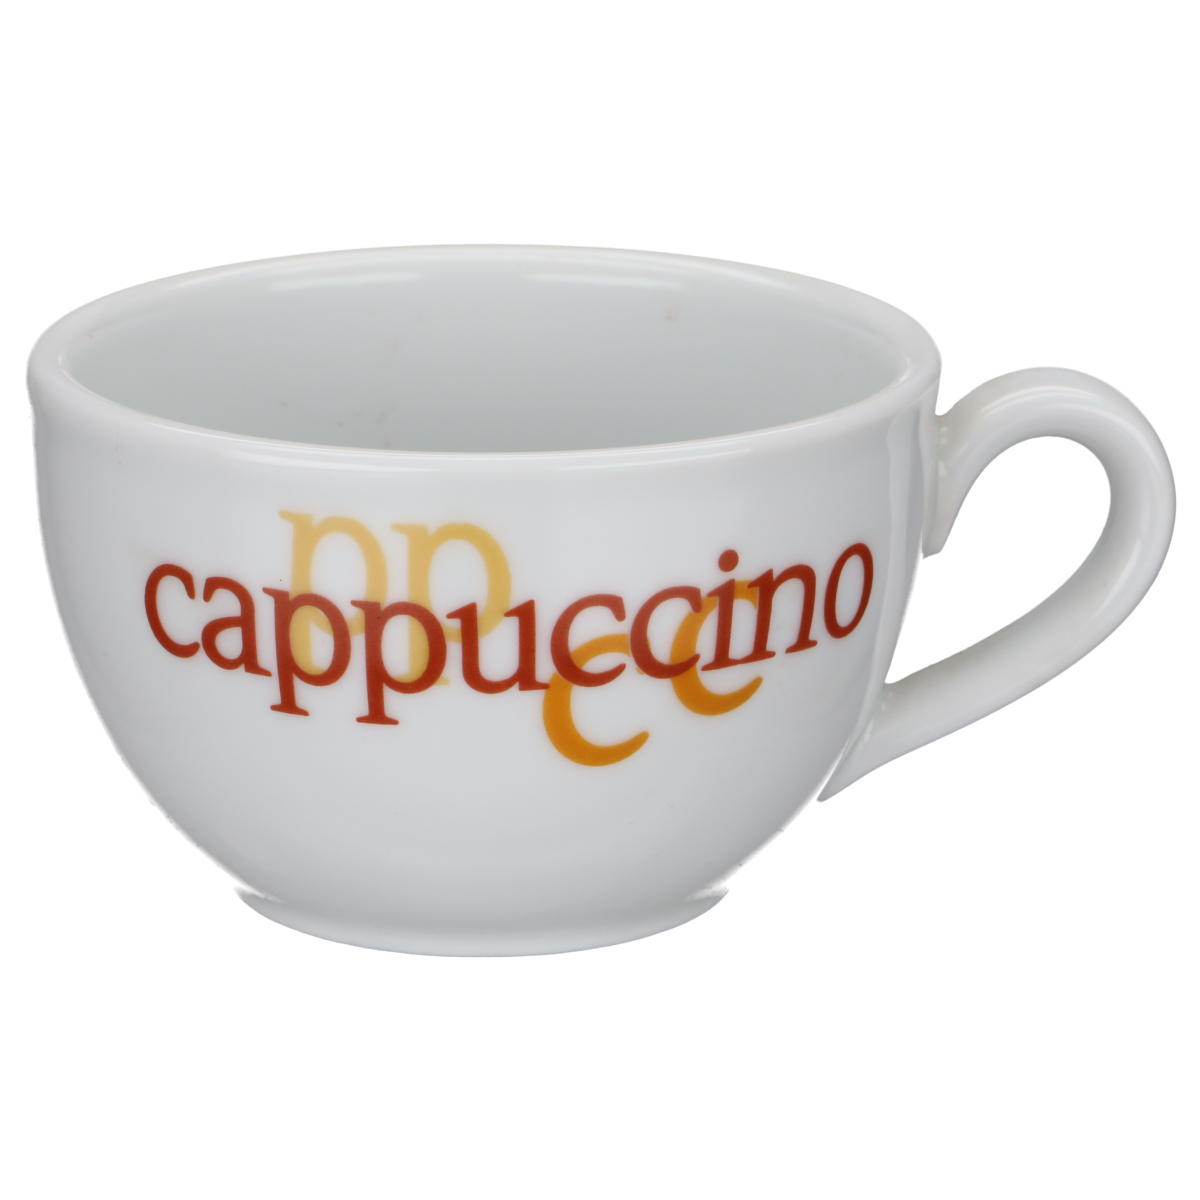 Kaffeetasse Cappuccino weiß mit Bezeichnung